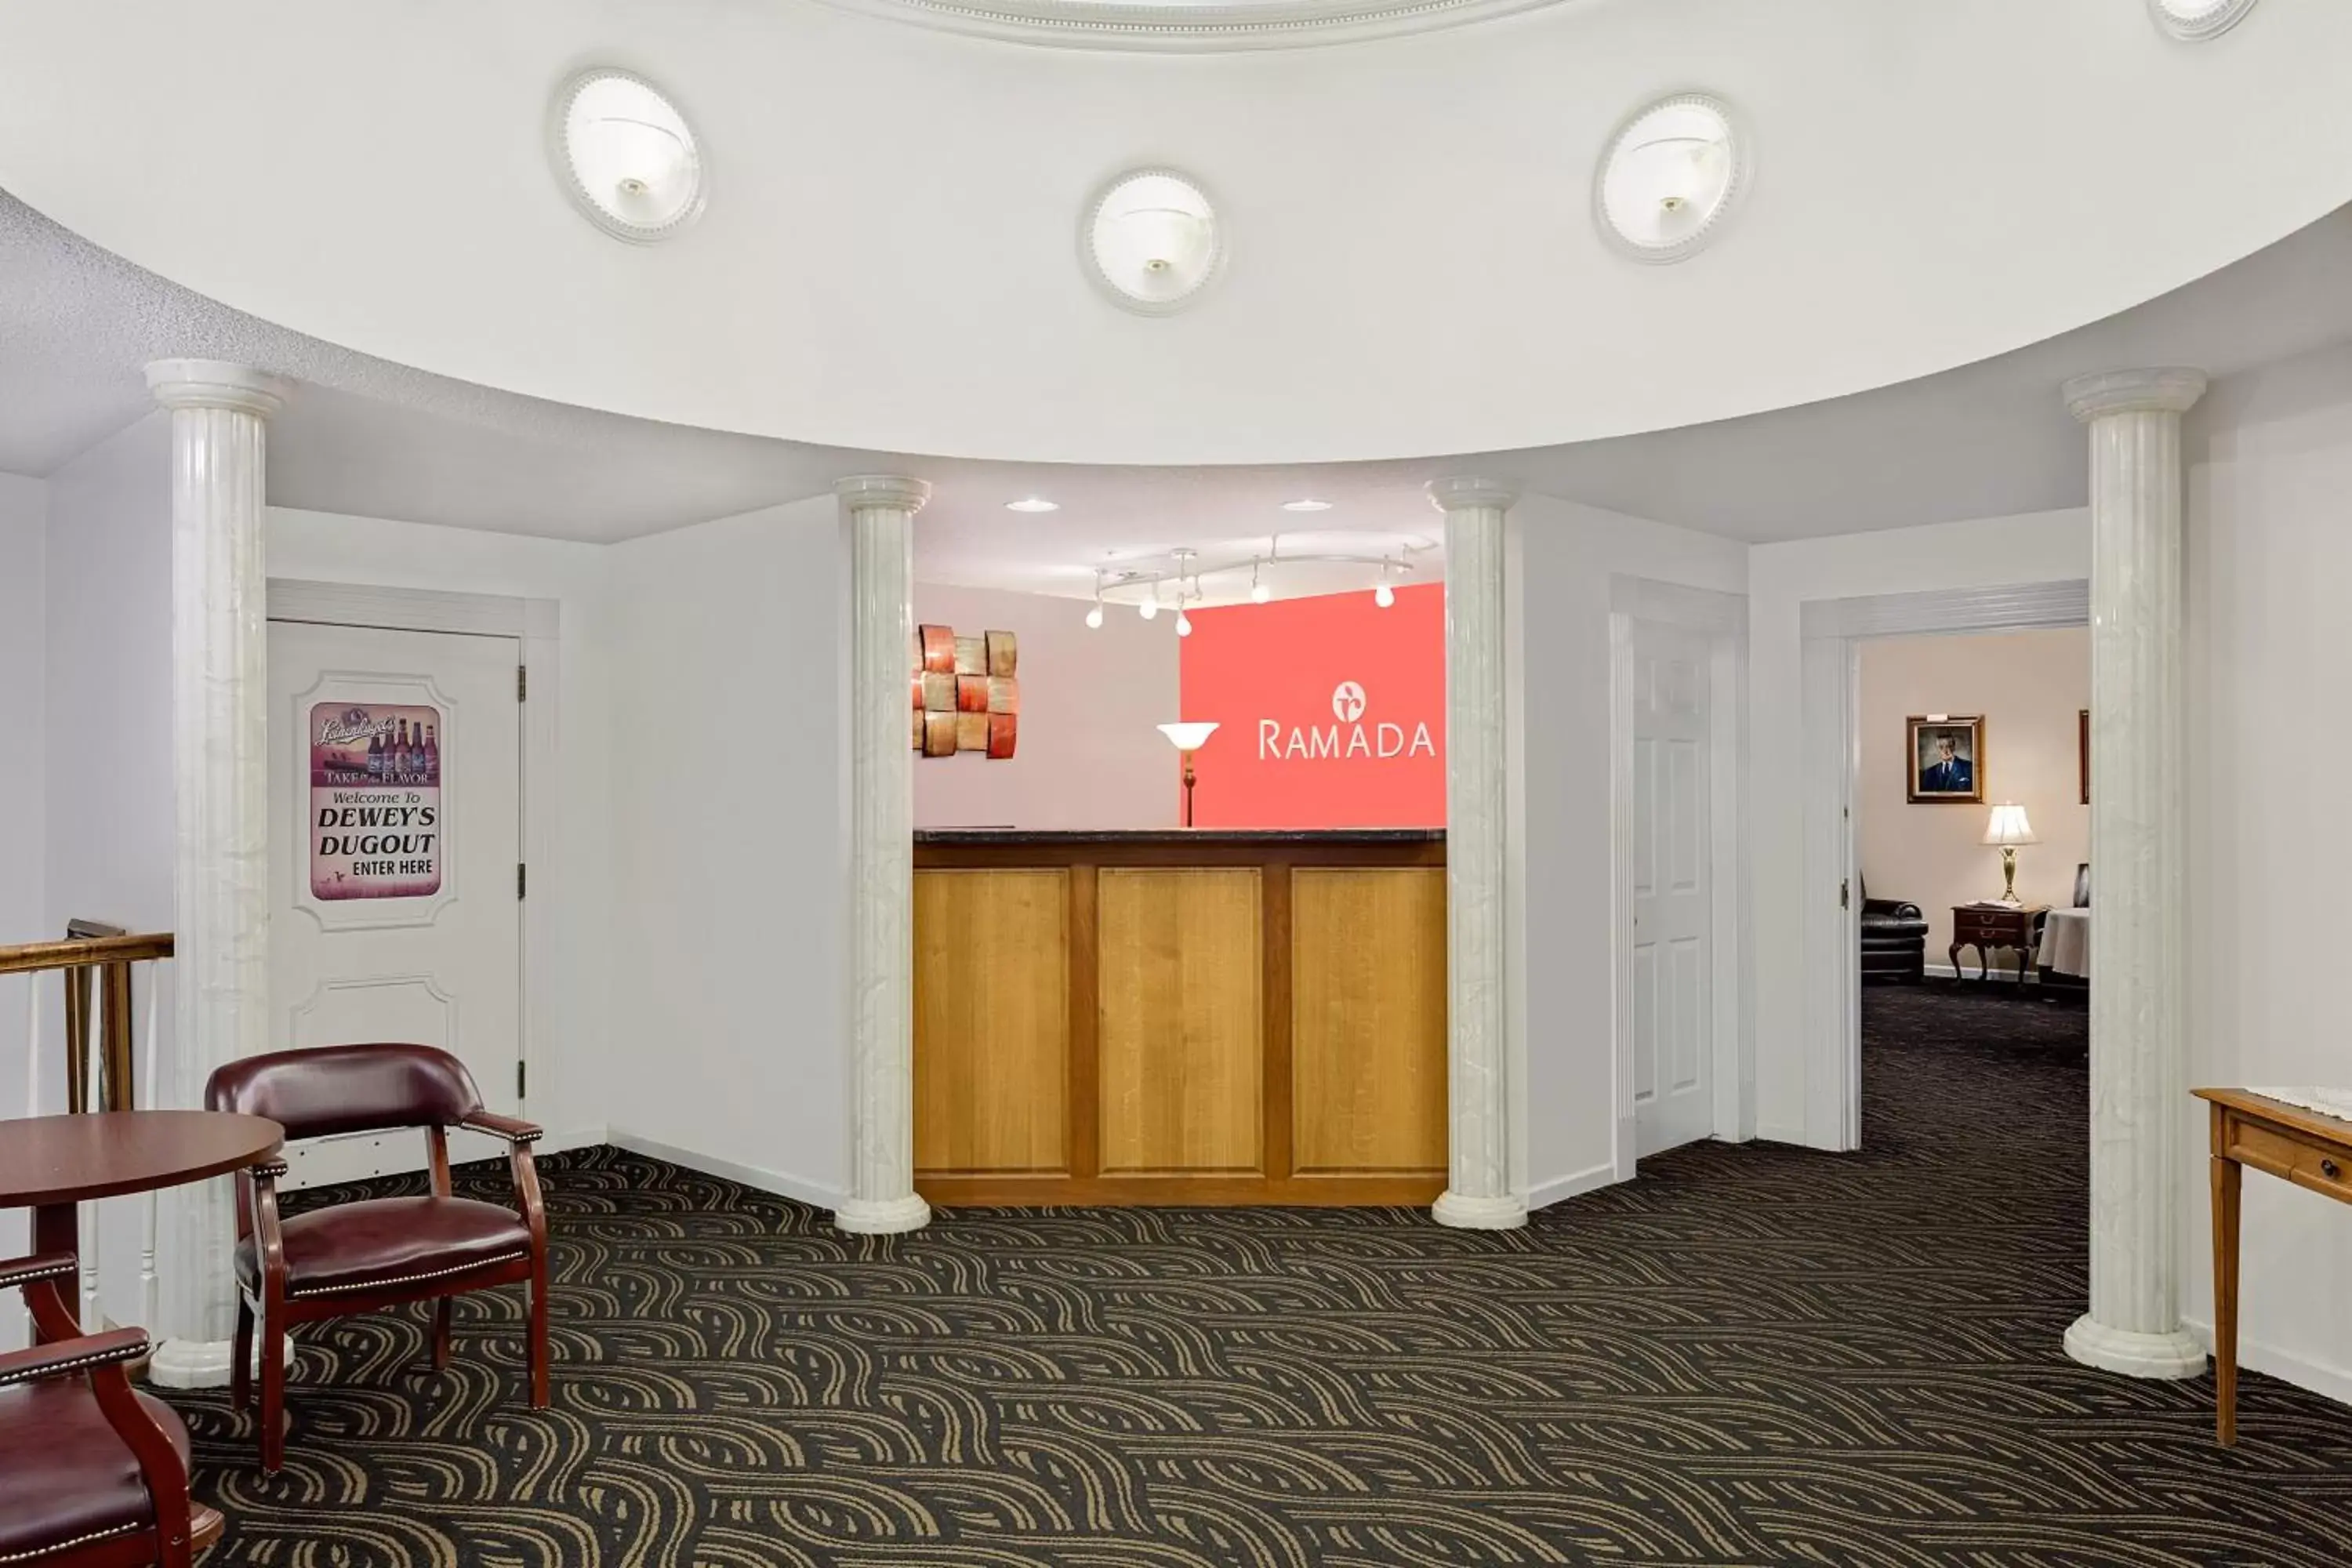 Lobby or reception, Lobby/Reception in Ramada by Wyndham Richland Center